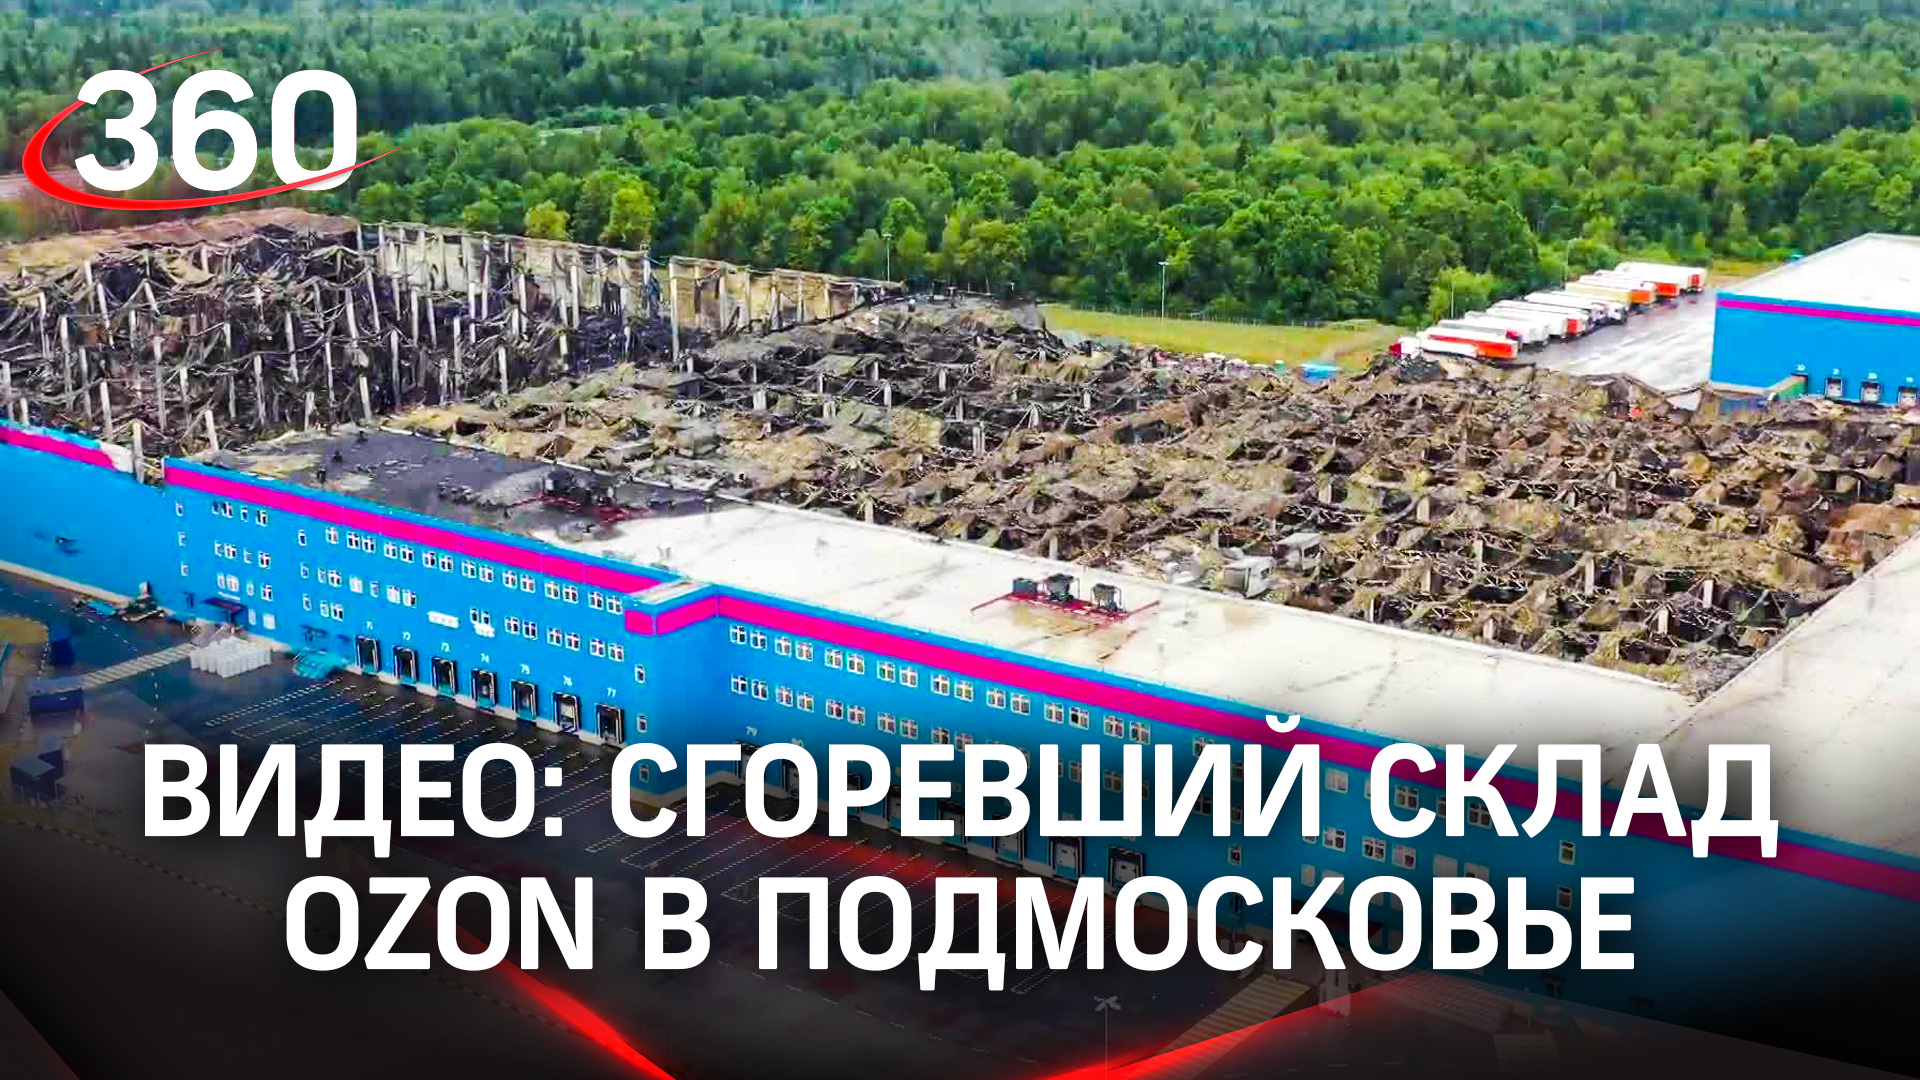 Видео: сгоревший склад OZON в Подмосковье. Кадры с воздуха и масштаб разрушений